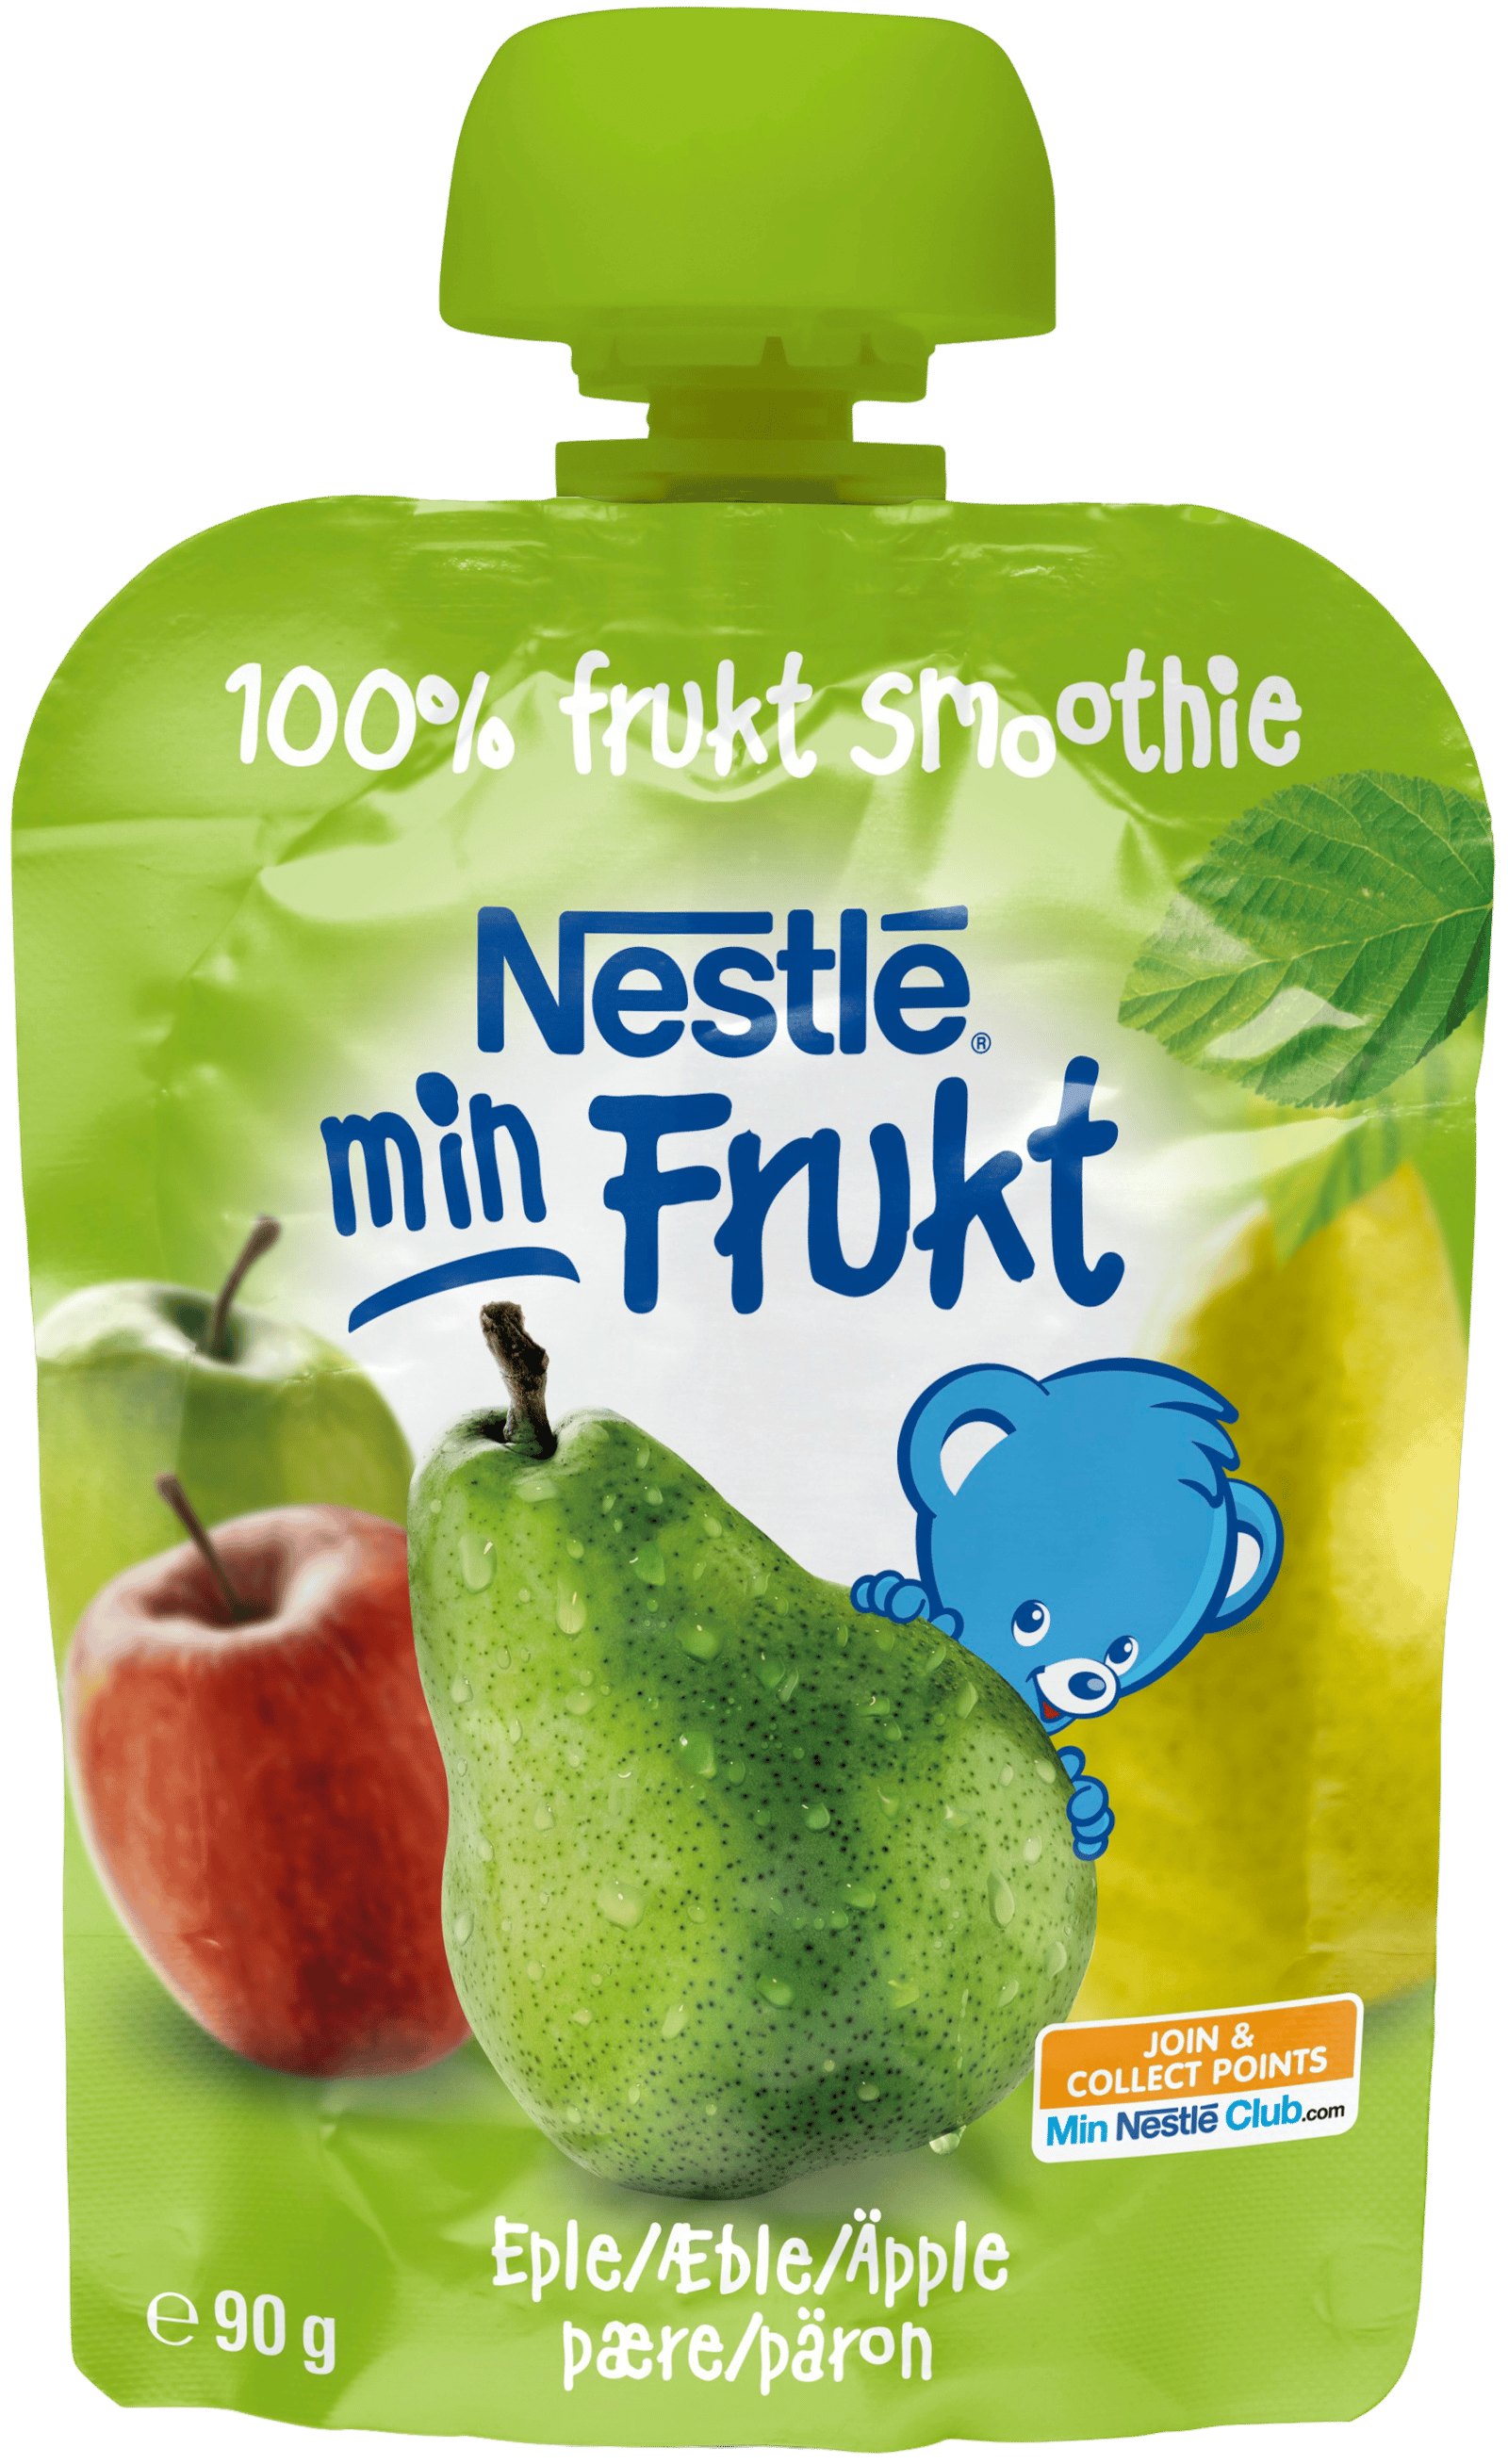 Nestlé Min Frukt Äpple & Päron 6 månader 90 g